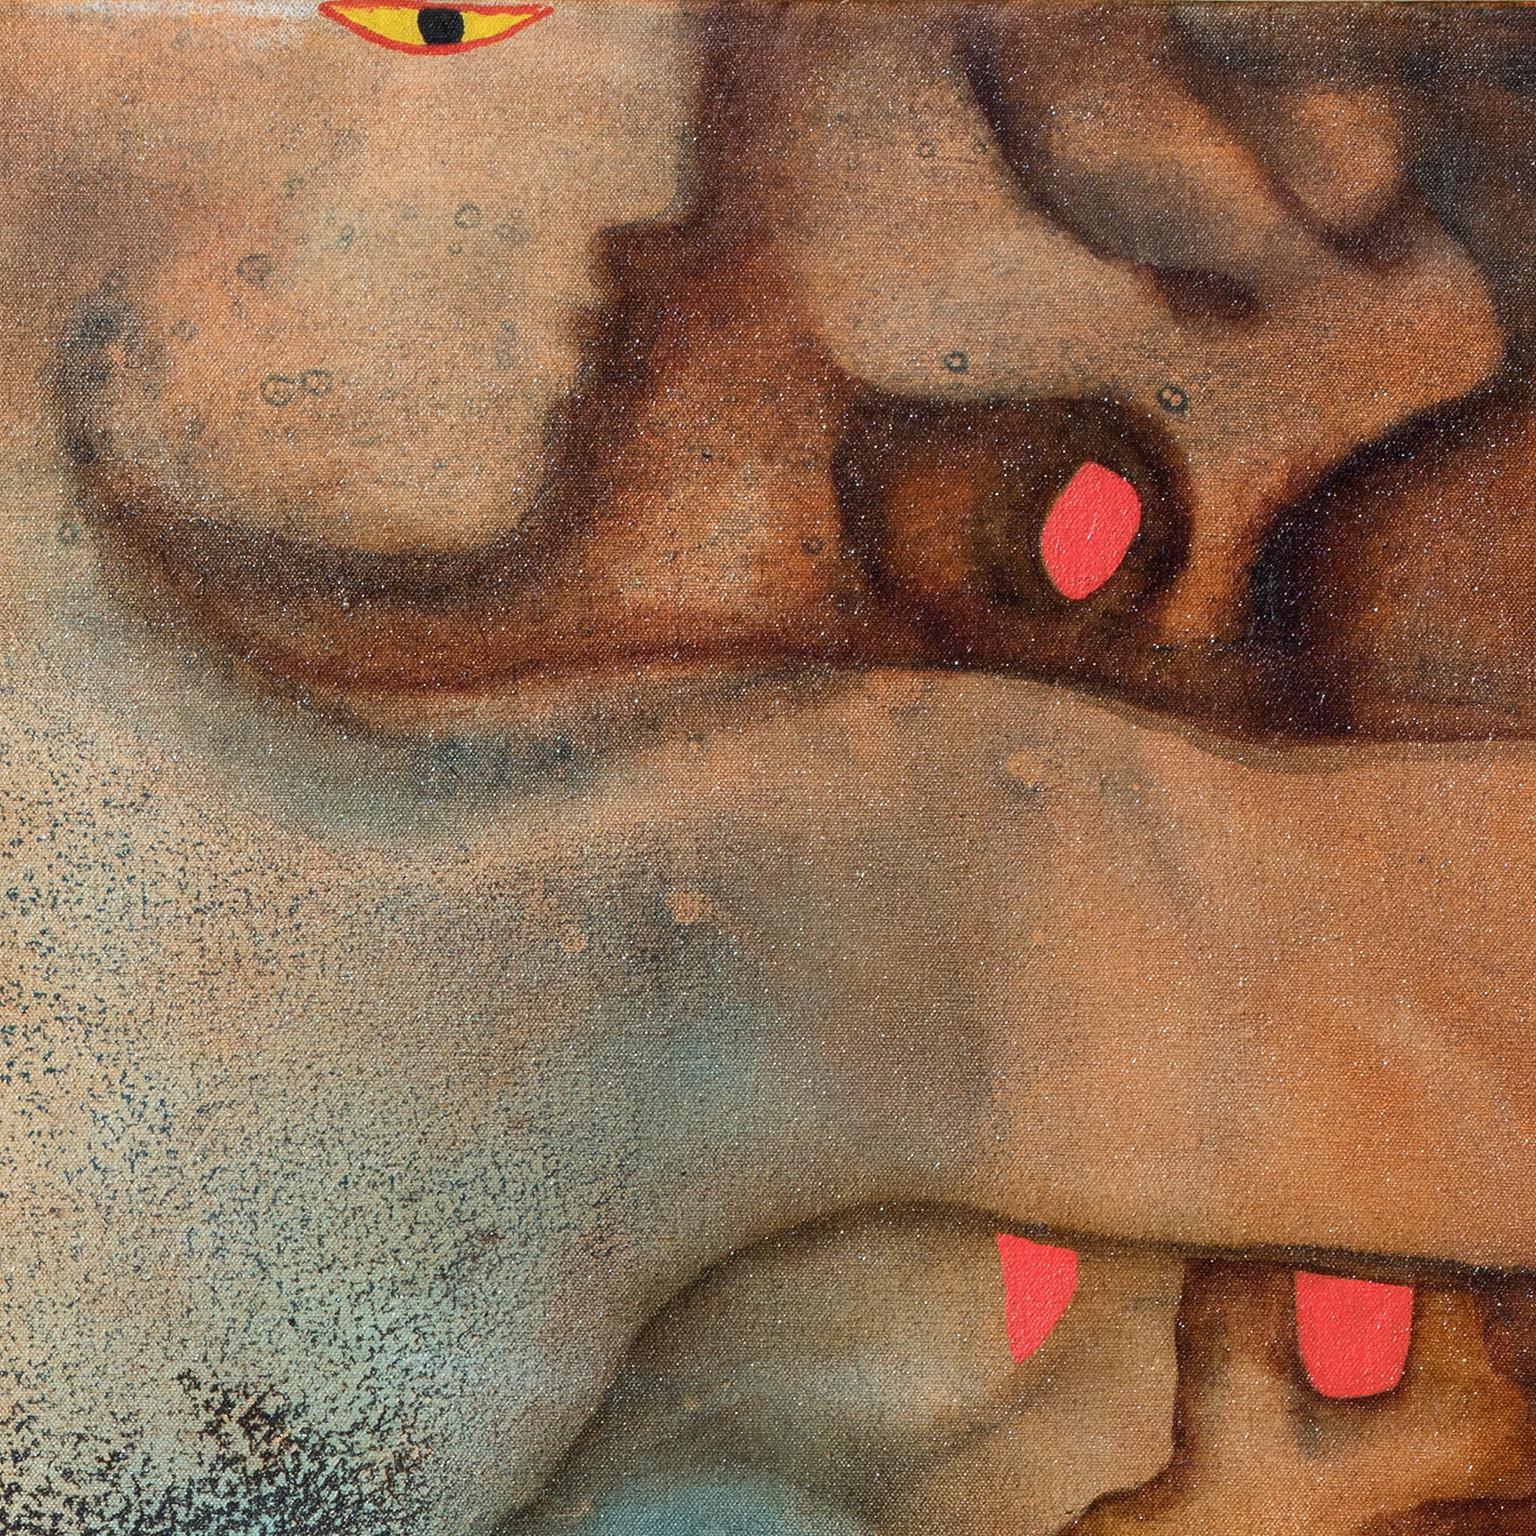 Méduse - mythologie grecque, peinture à l'huile figurative abstraite de Versus, couleur terre - Painting de Gian Berto Vanni